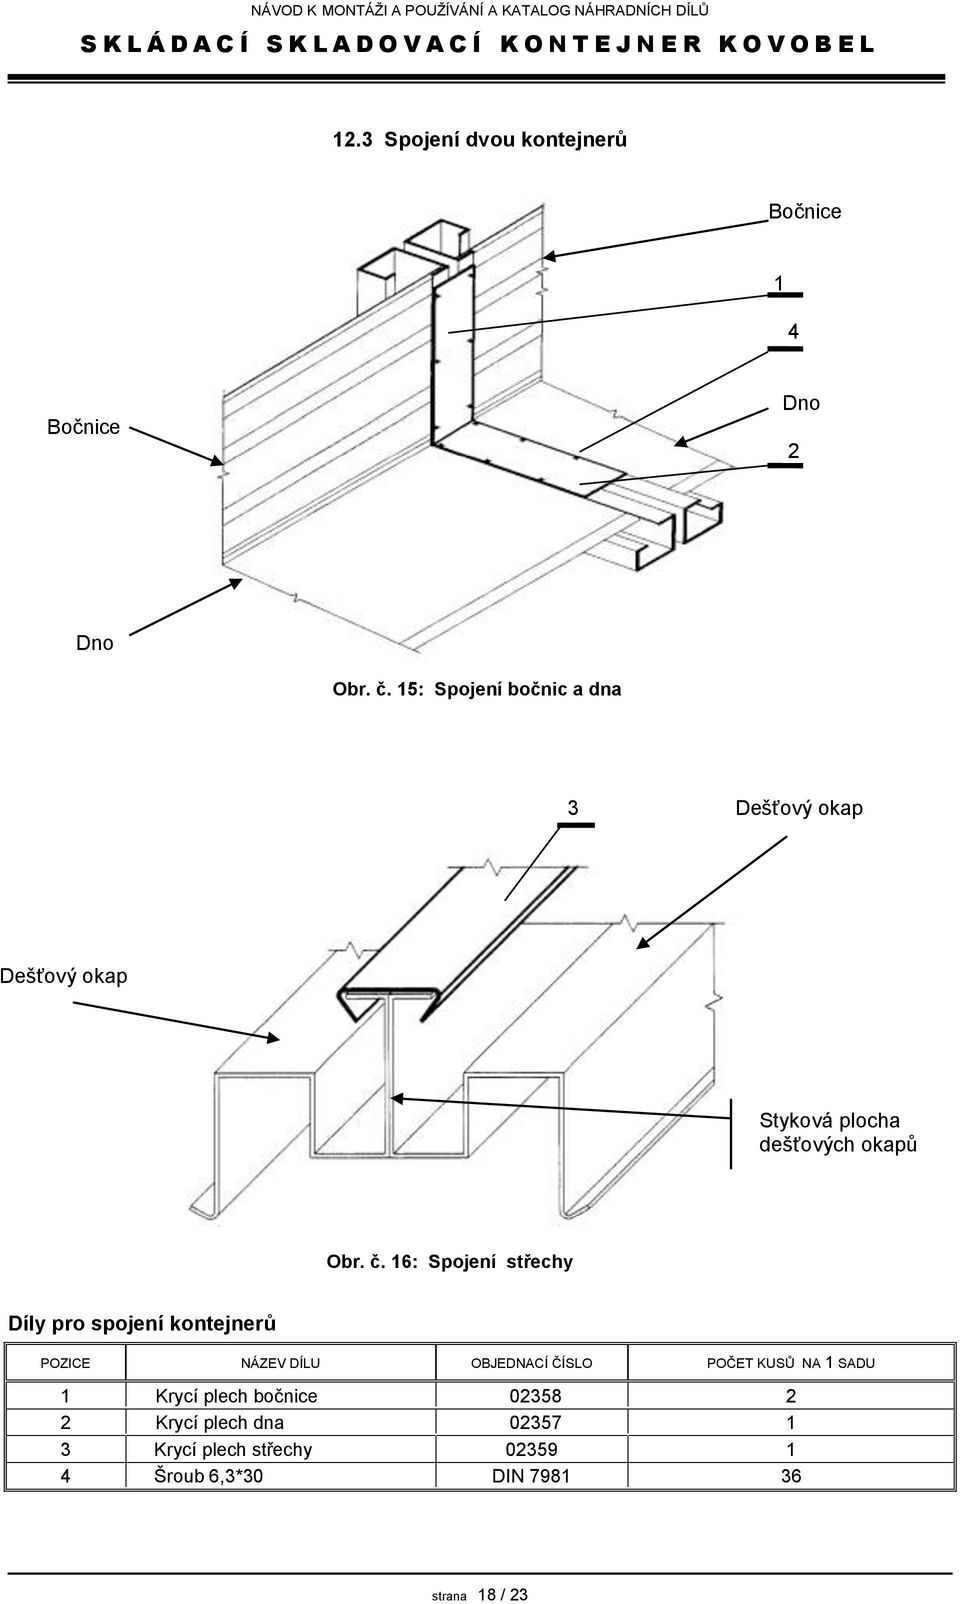 16: Spojení střechy Díly pro spojení kontejnerů POZICE NÁZEV DÍLU OBJEDNACÍ ČÍSLO POČET KUSŮ NA 1